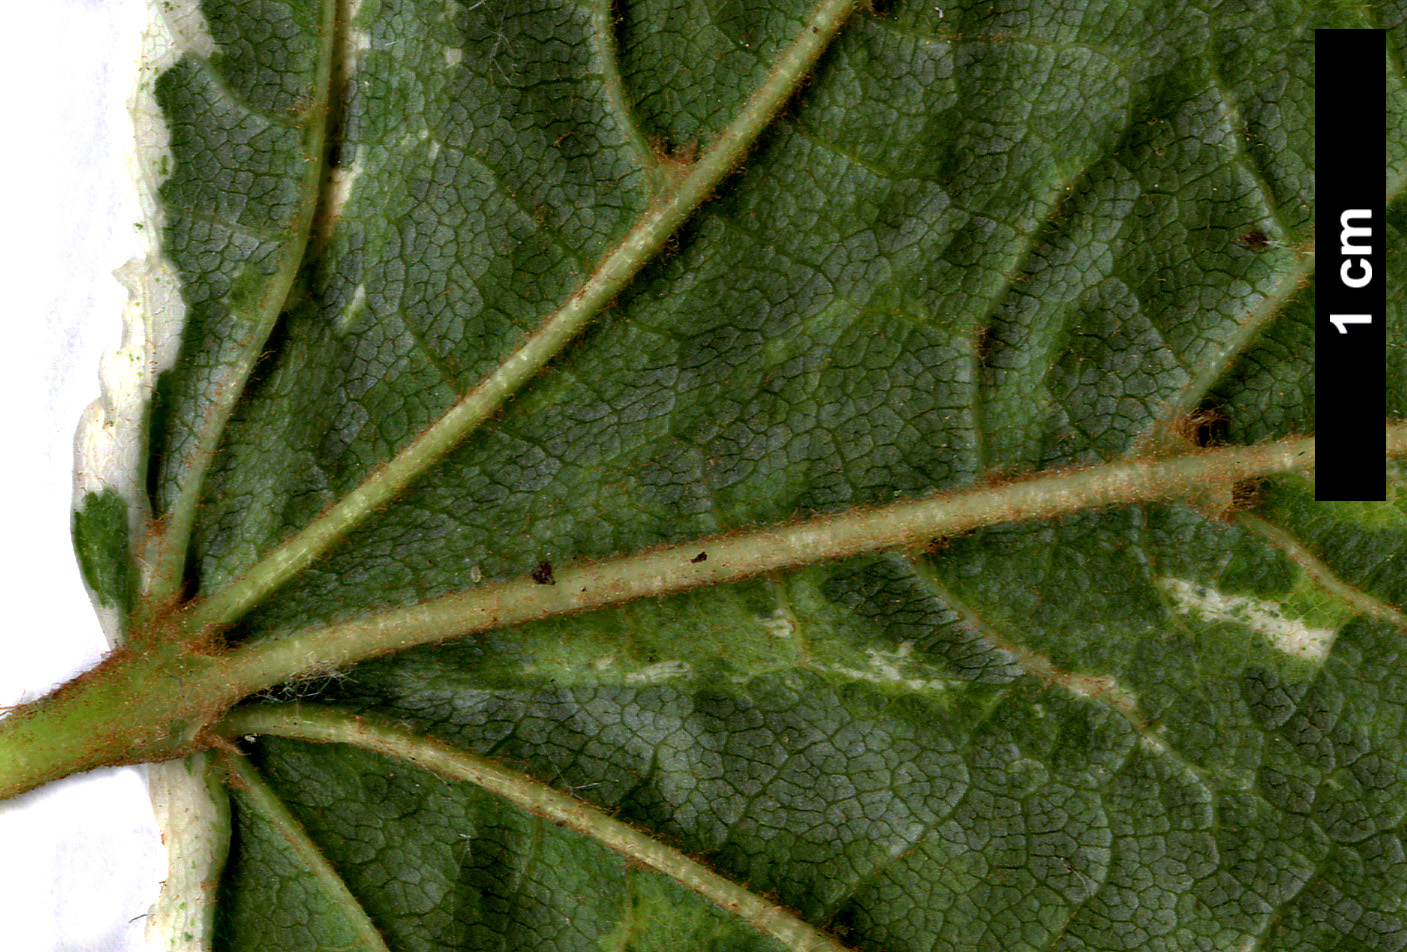 High resolution image: Family: Sapindaceae - Genus: Acer - Taxon: rufinerve - SpeciesSub: 'Albolimbatum'